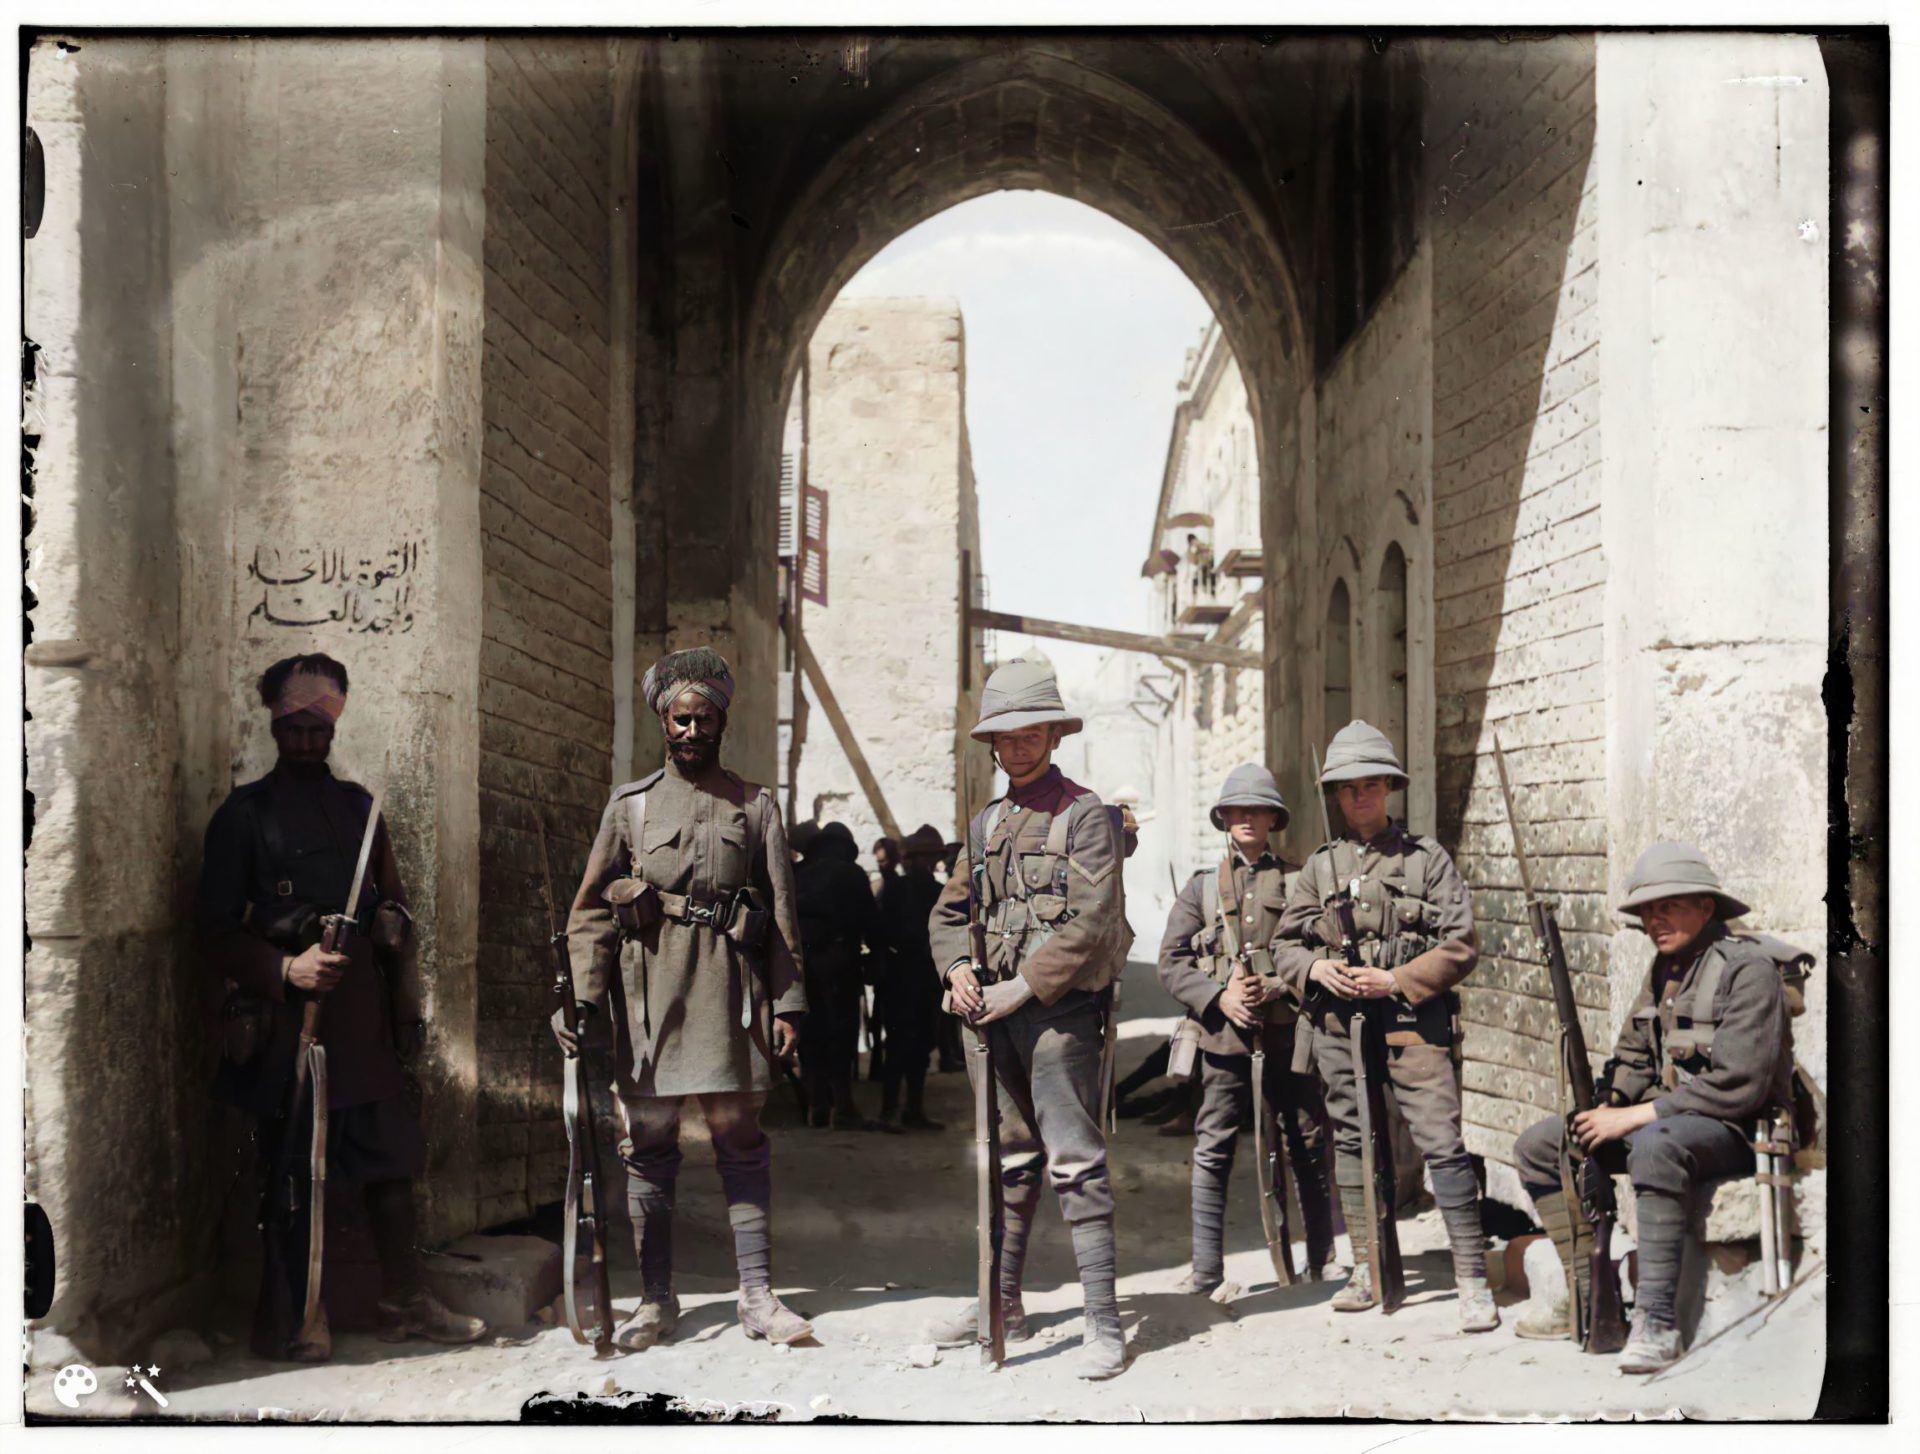 חיילים בריטים והודים בשער סנט סטפן (שער האריות), 8 באפריל 1920. מספר תמונה: LC-DIG-matpc-00756